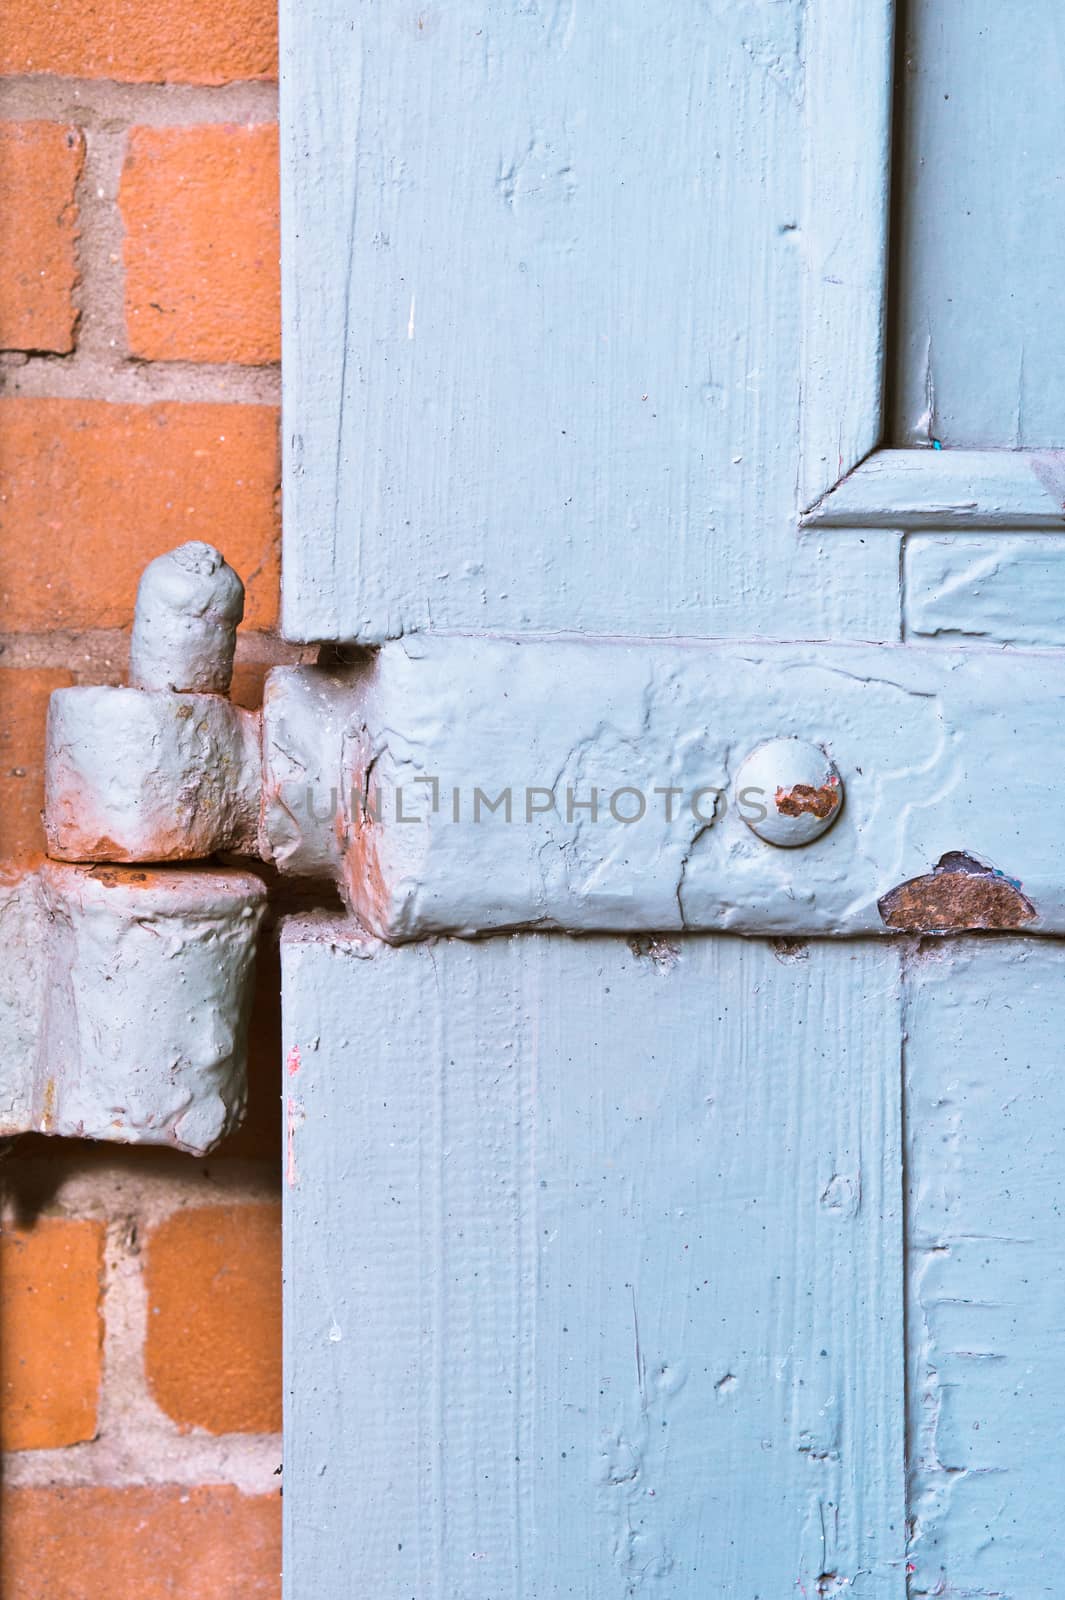 Old hinge on a wooden door